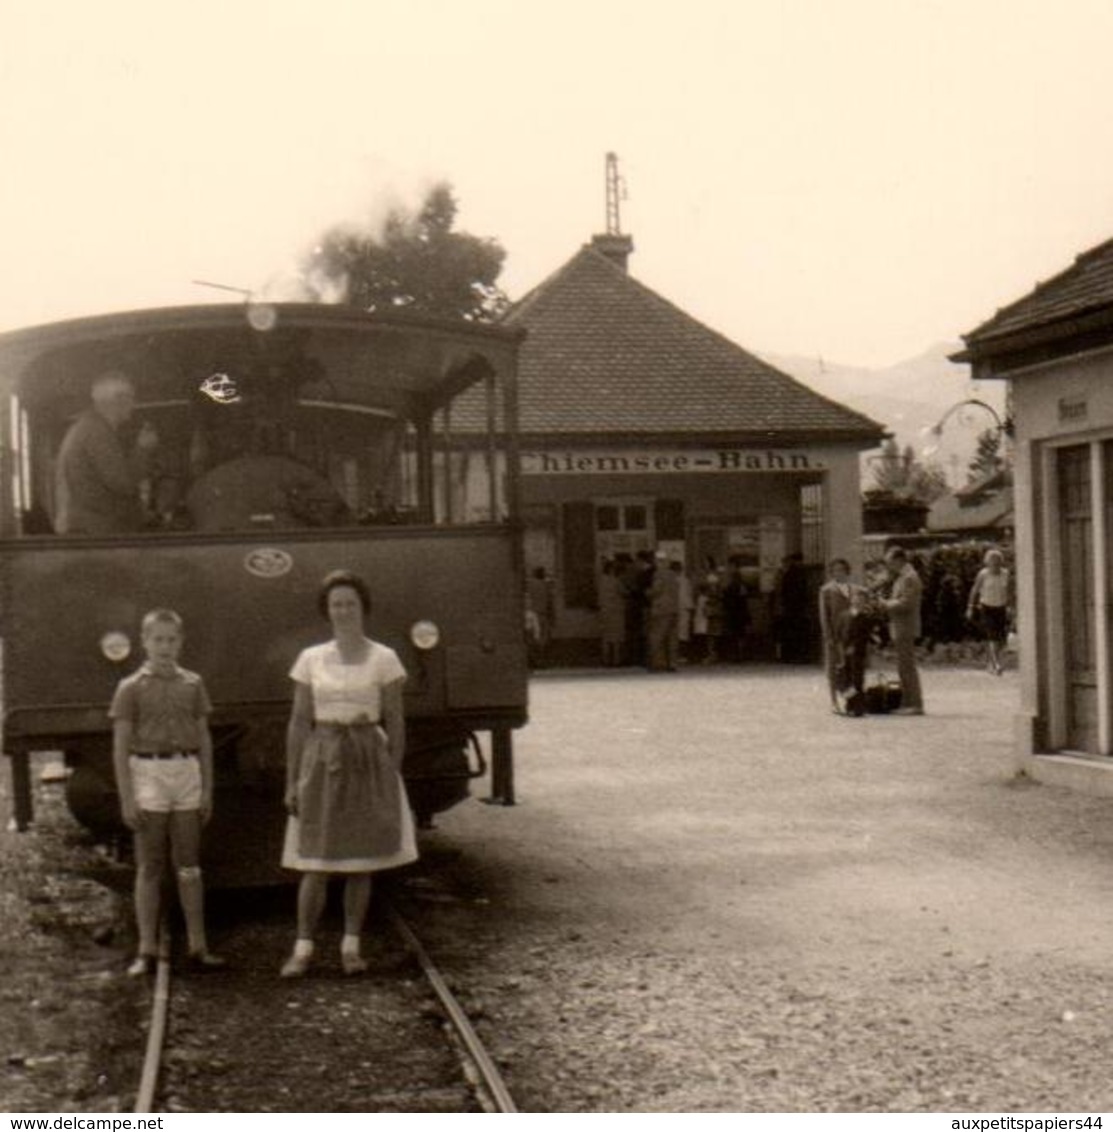 Photo Originale Wagon, Train & Micheline à Quai à La Gare à Chiemsee-Bahn - 83209 Prien Am Chiemsee, Allemagne - Trains